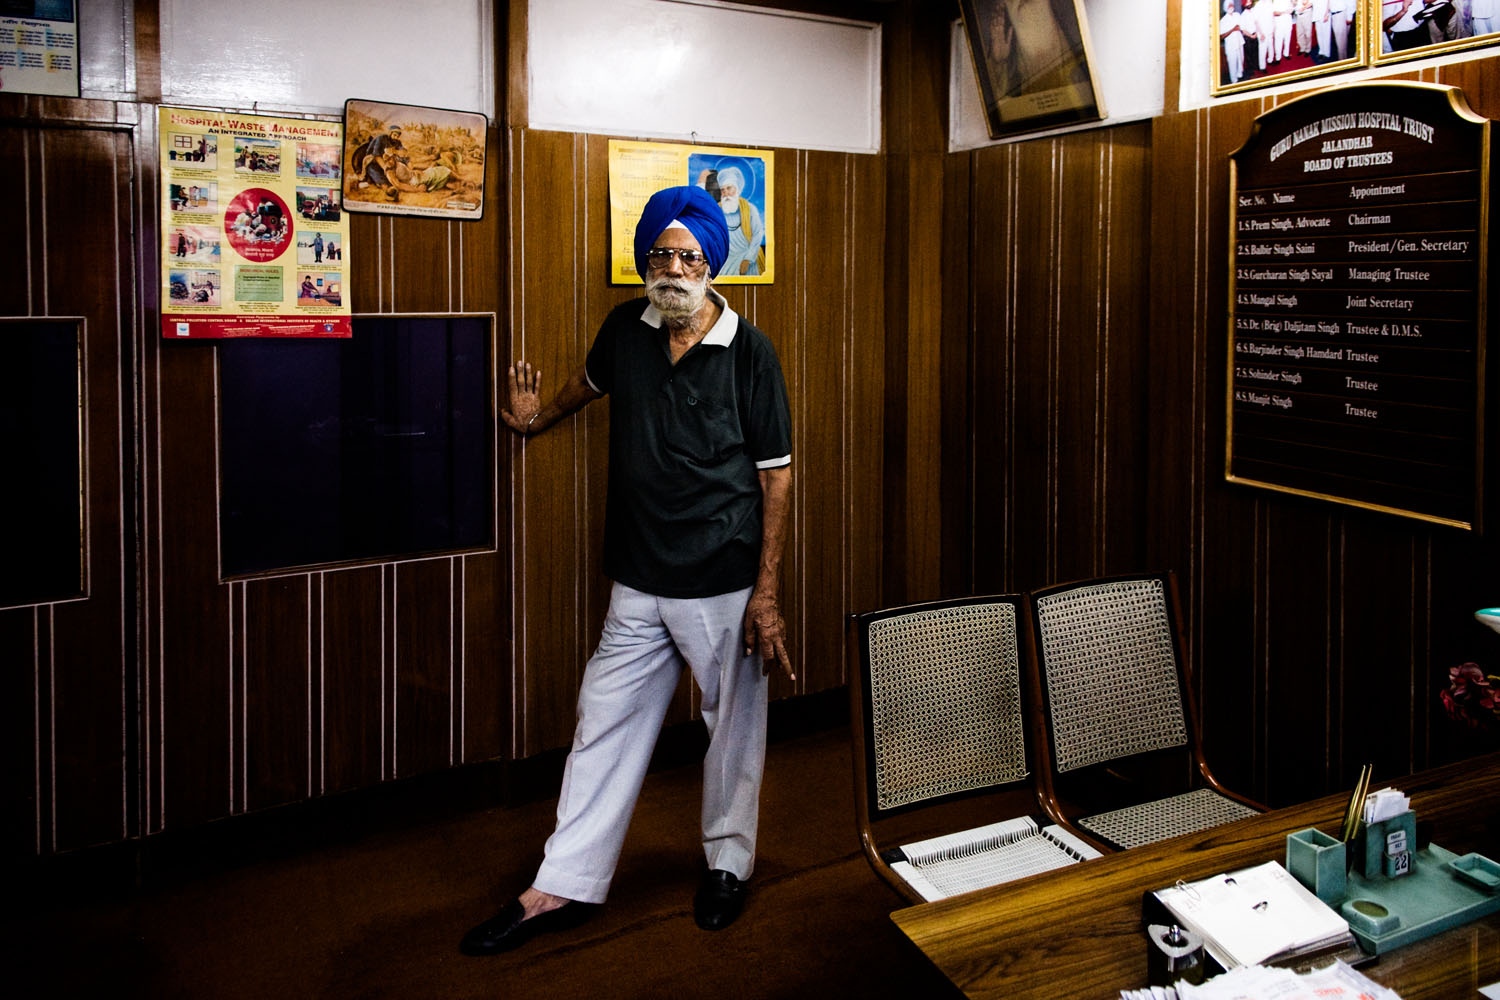 Sikhs Portraits